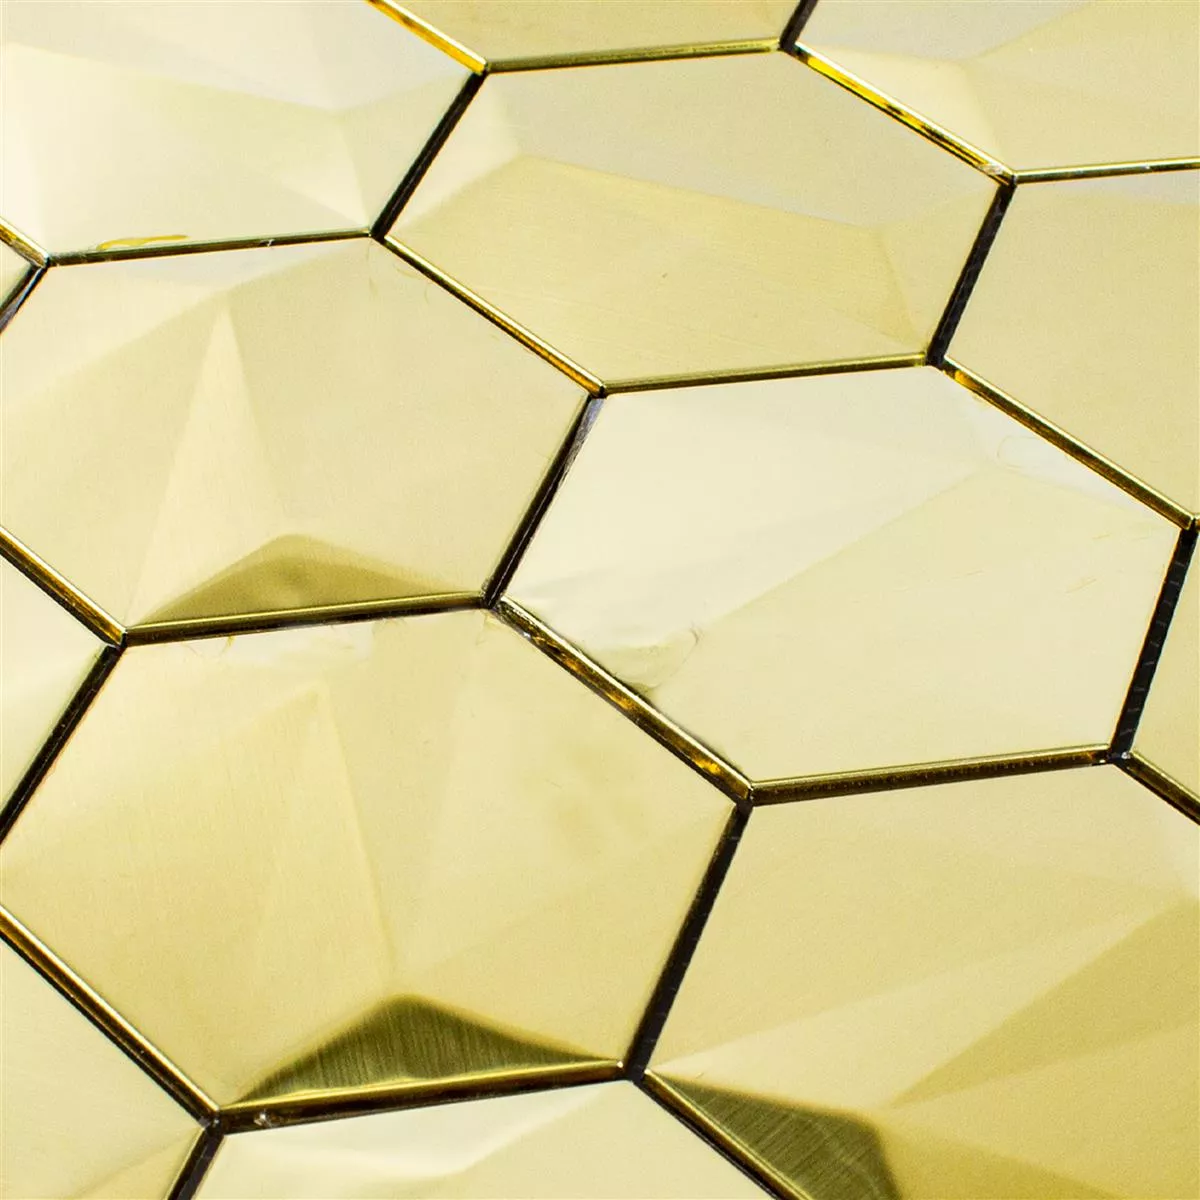 Muestra Acero Inoxidable Azulejos De Mosaico Durango Hexagonales 3D Oro